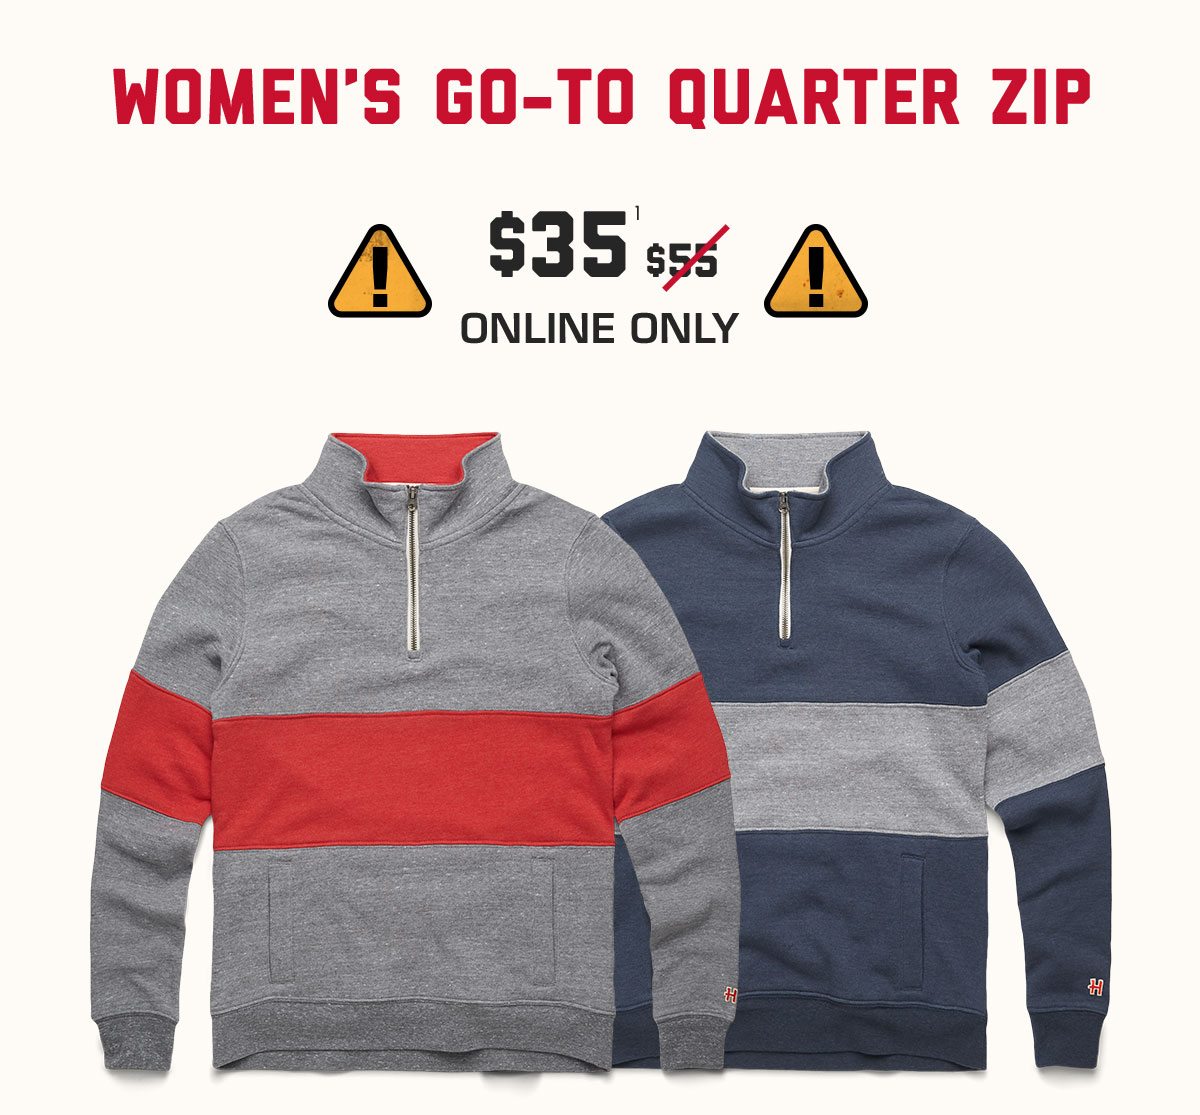 Women's Go-To Quarter Zip, $35* online only.